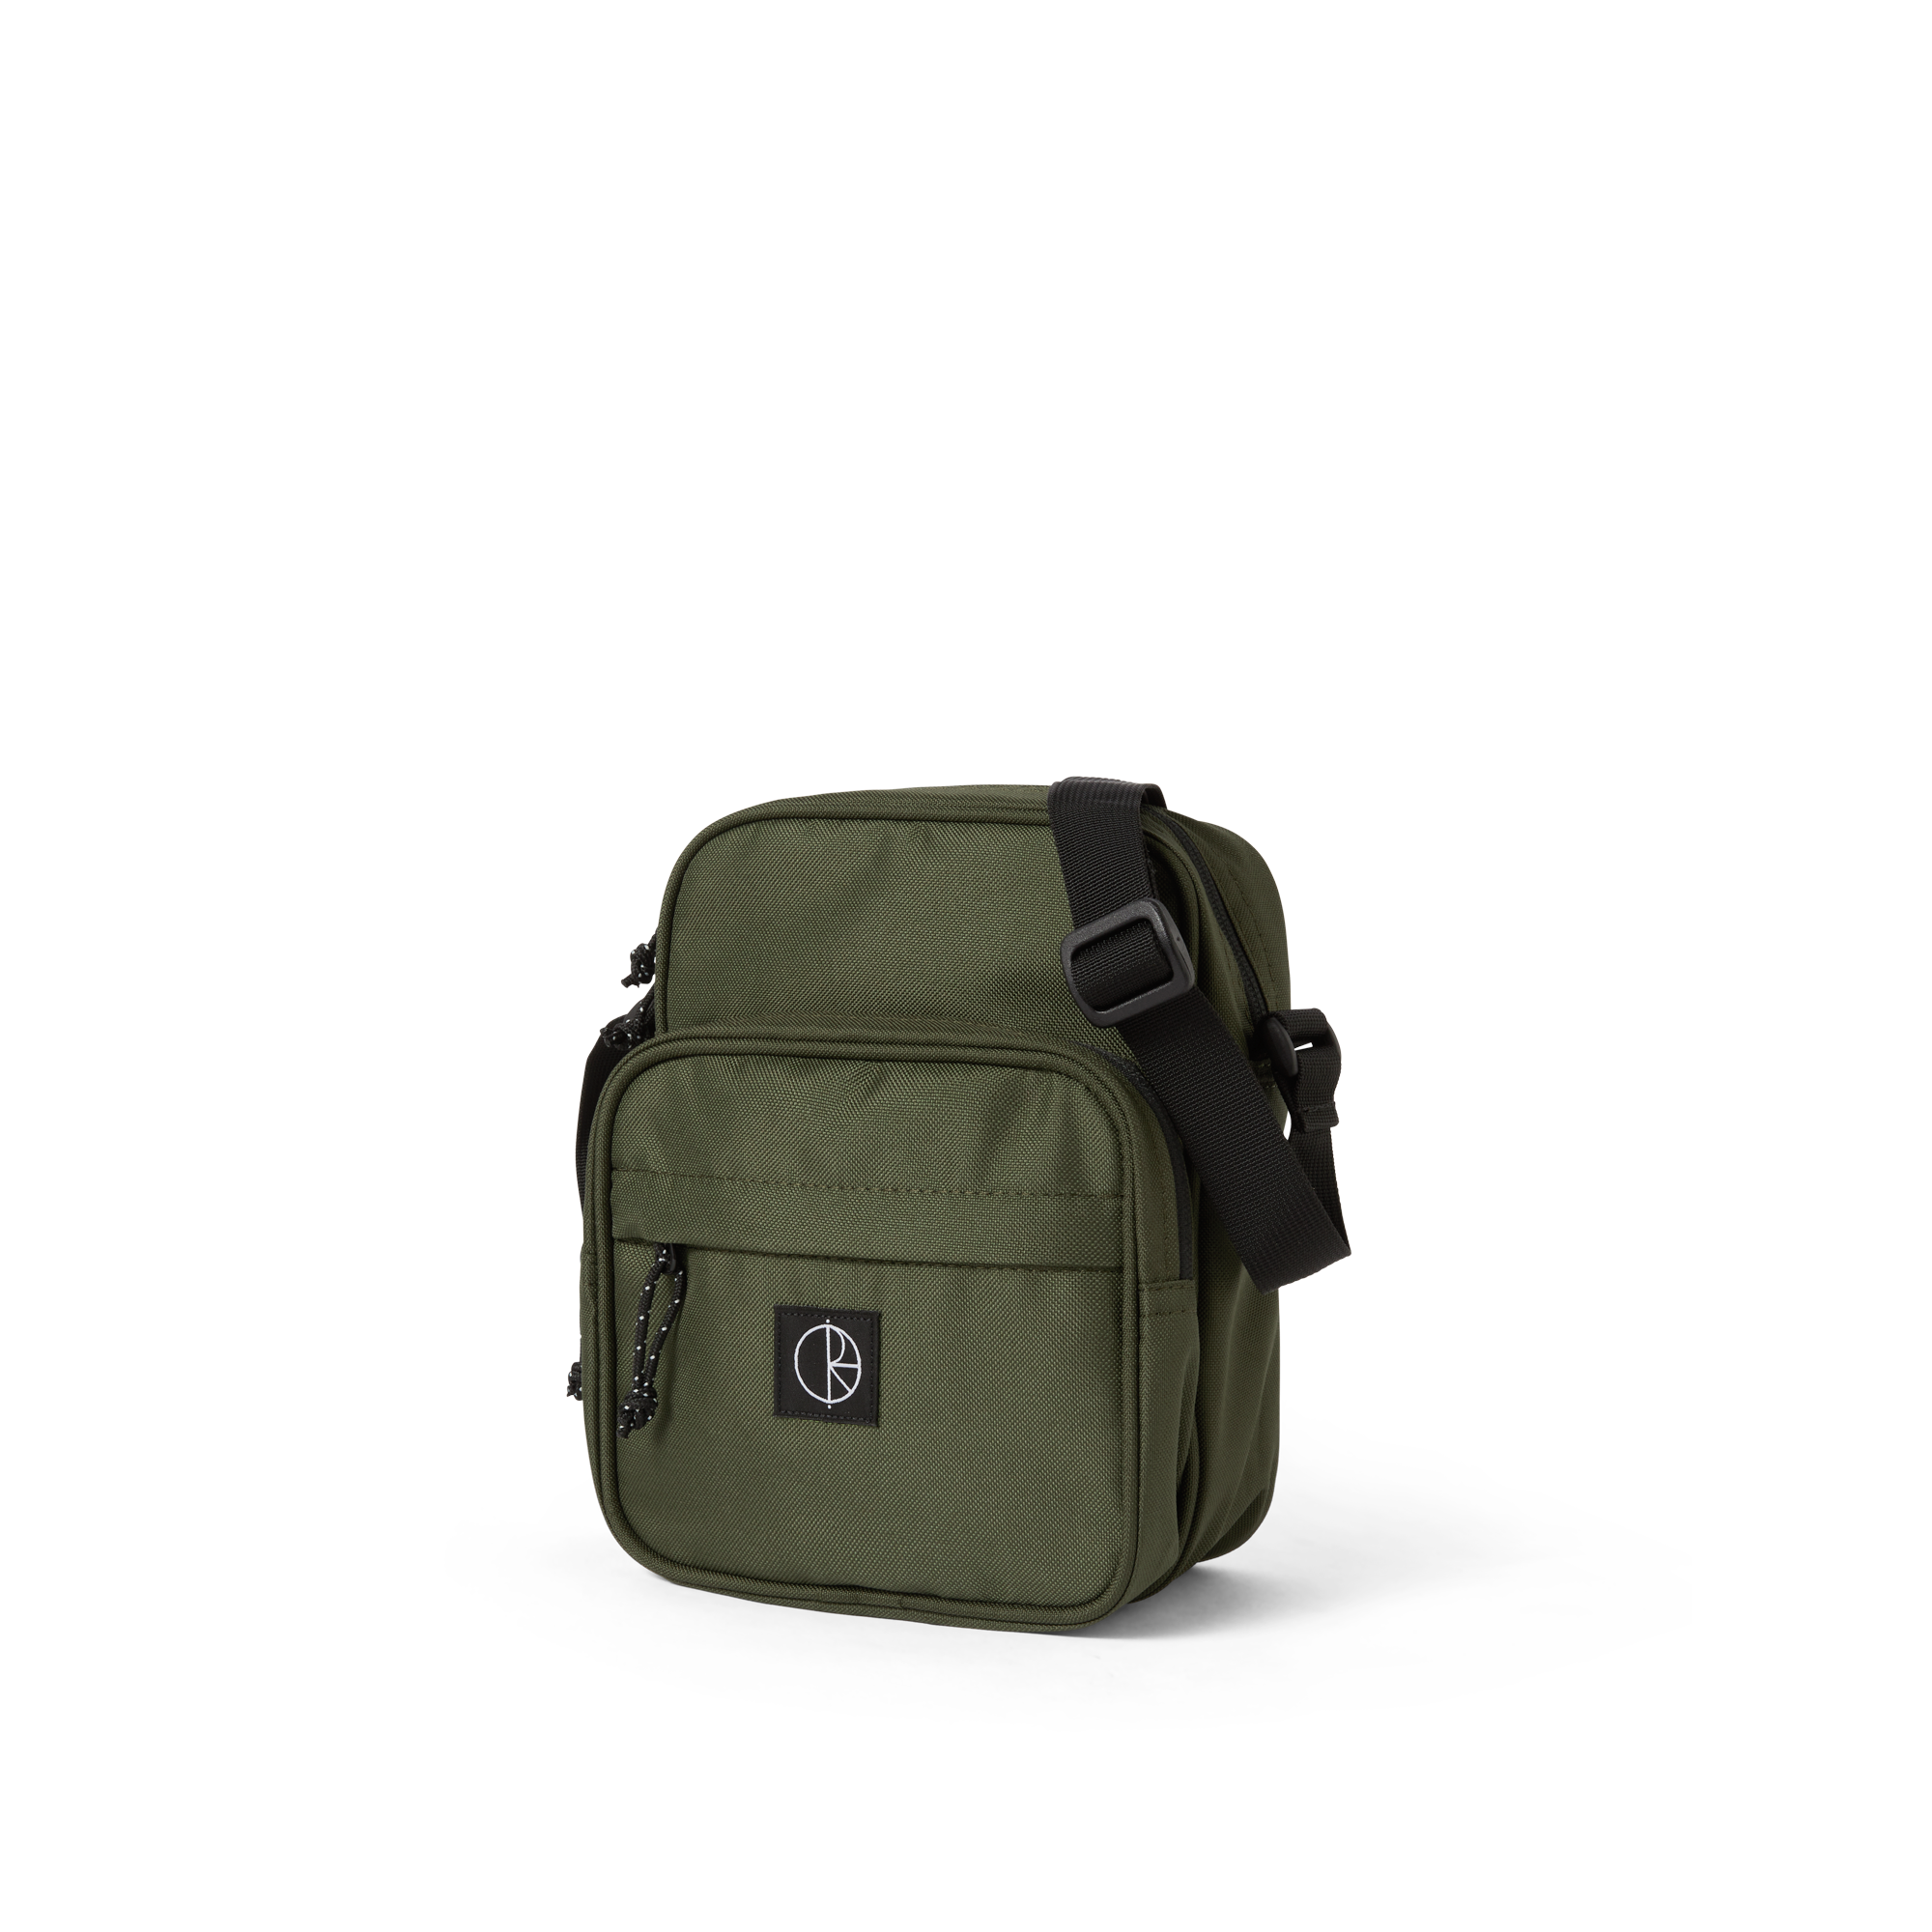 POLAR - Cordura Pocket Dealer Bag "Army Green"